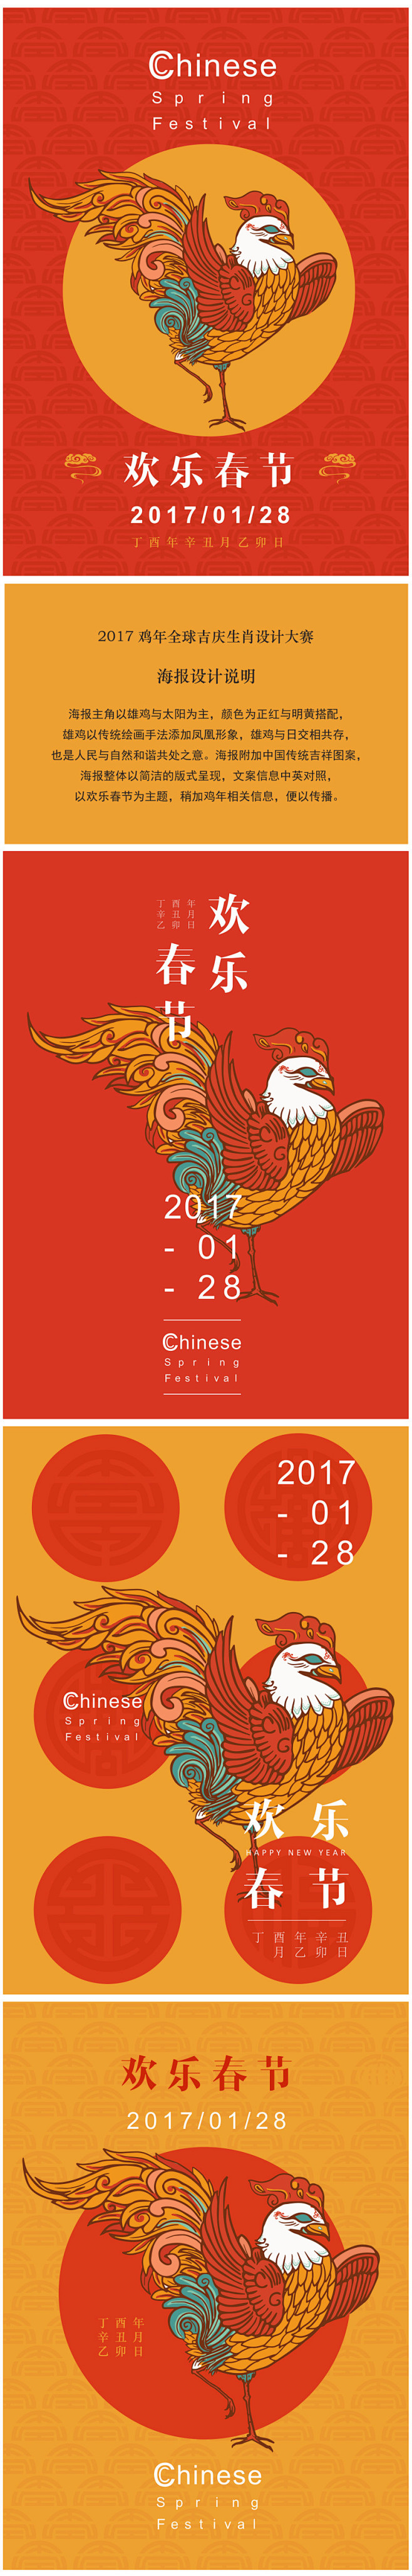 2017鸡年全球吉庆生肖设计大赛—海报设...